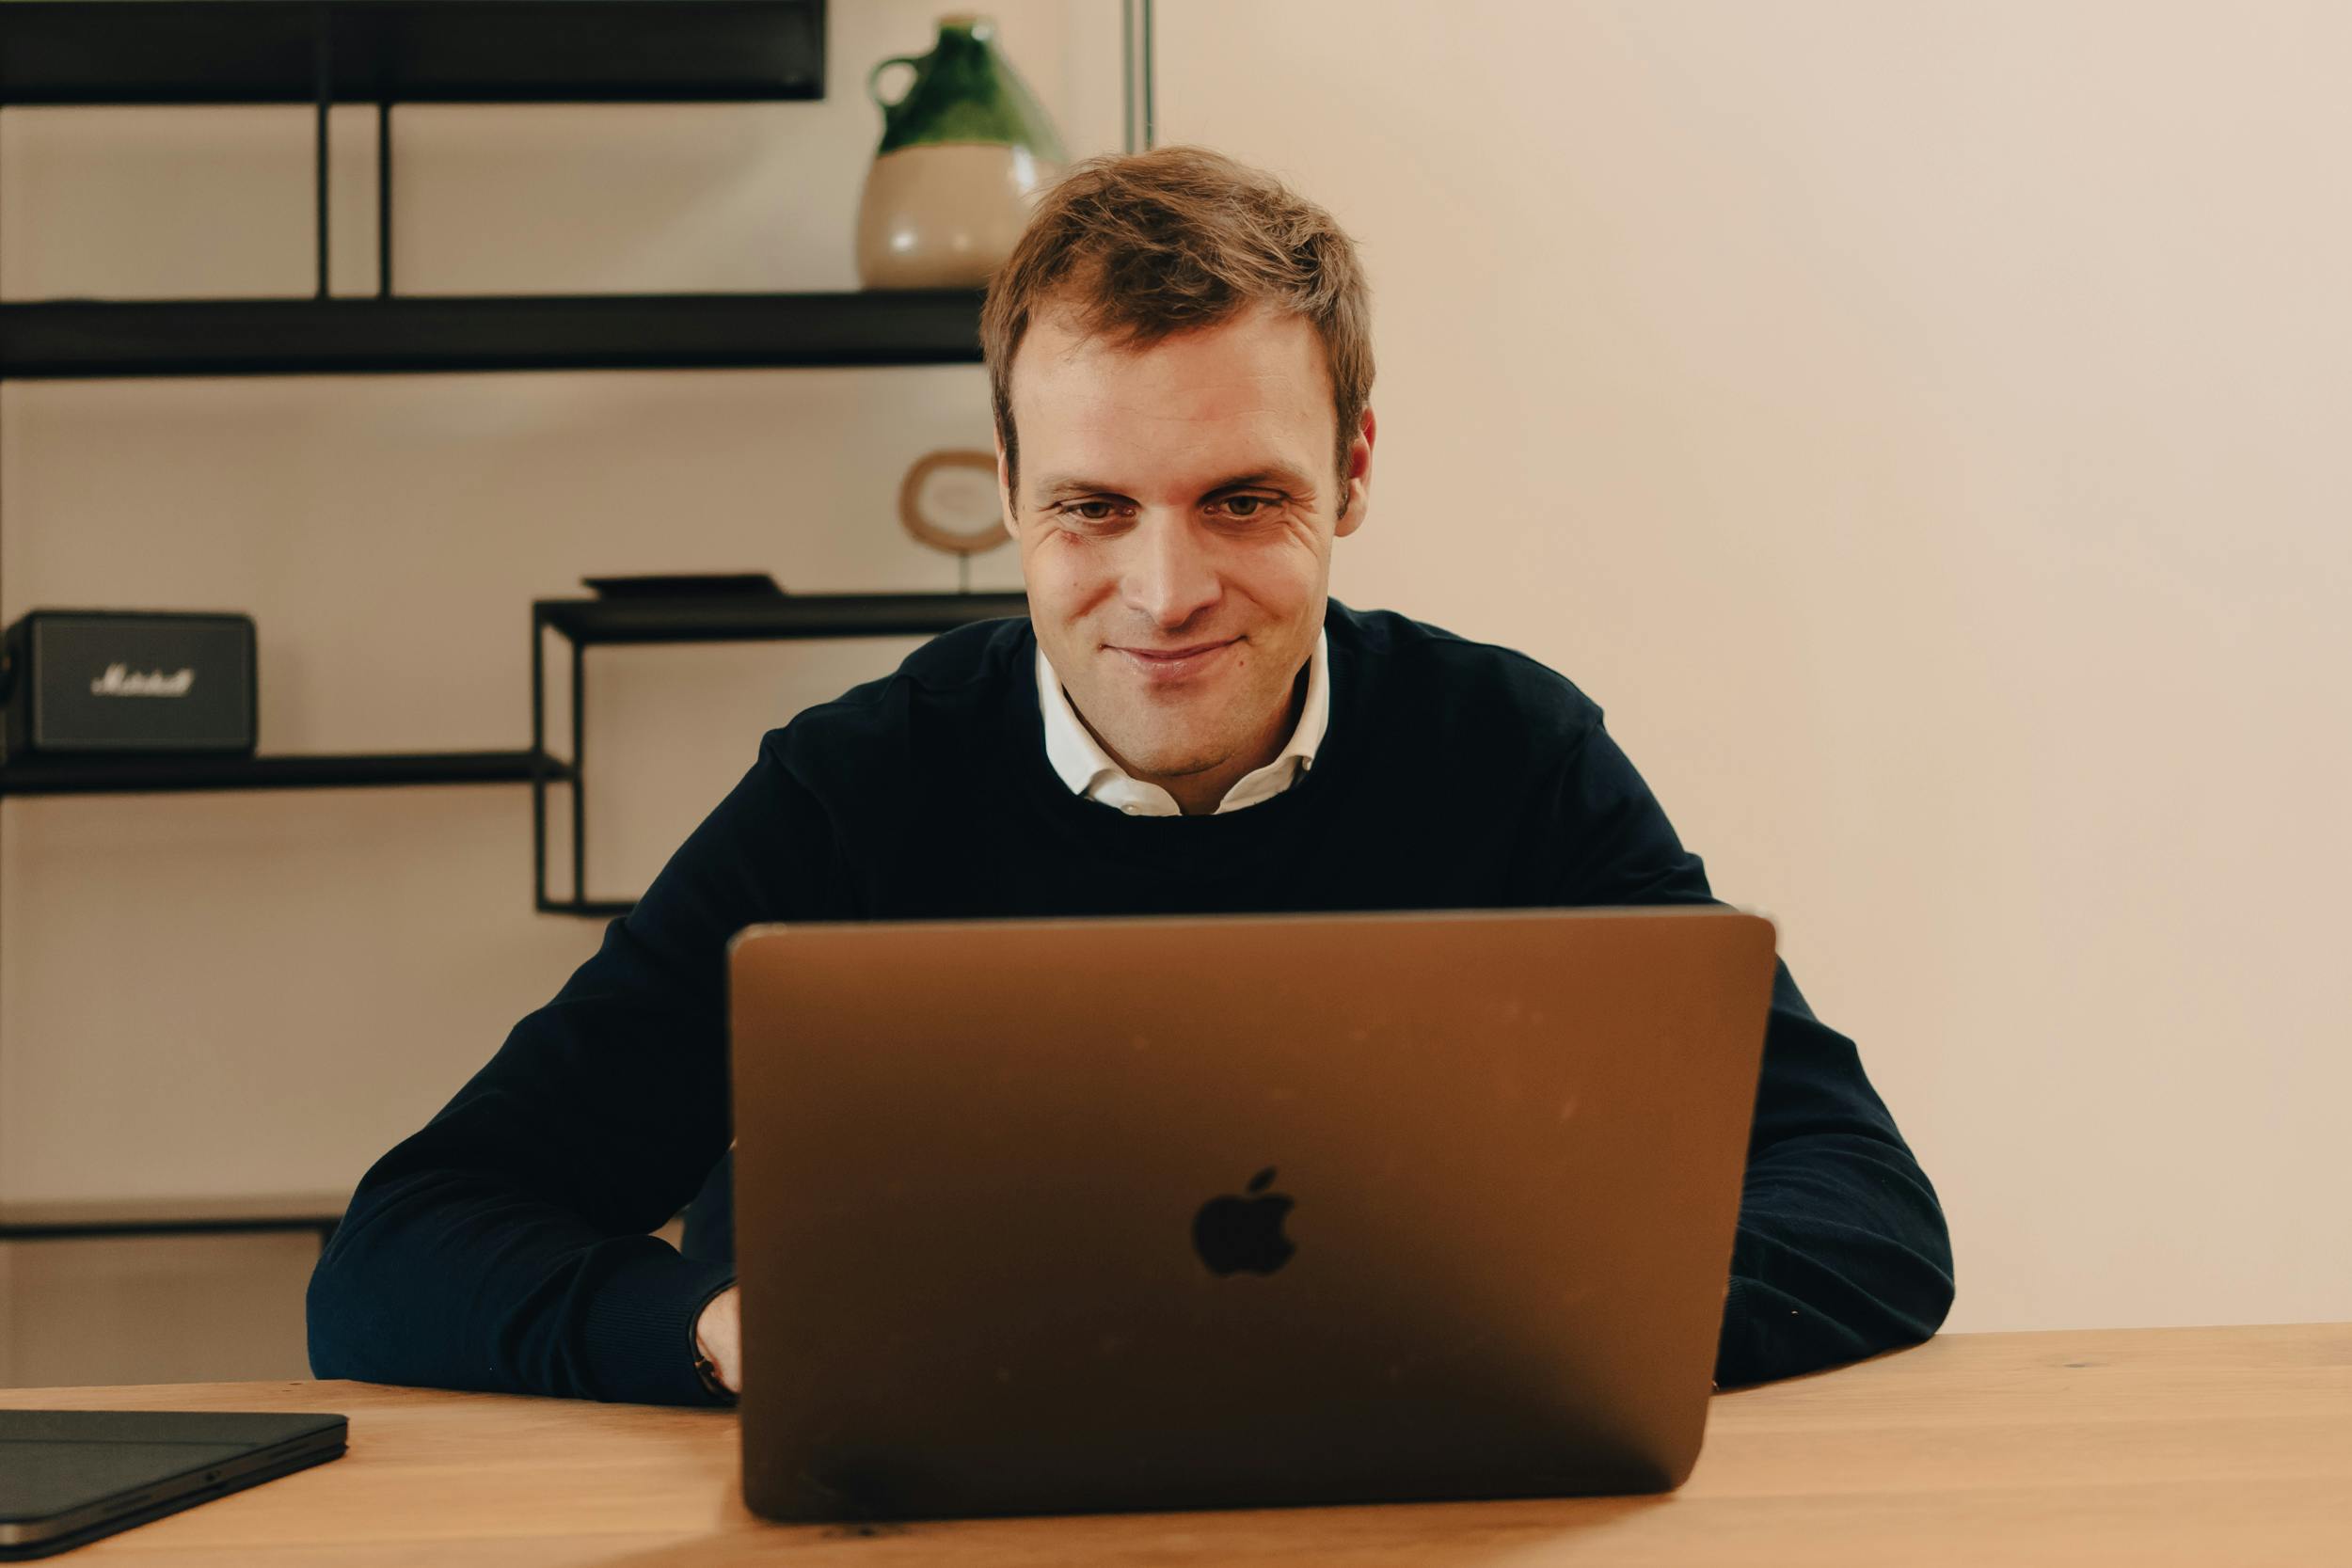 Man smiling at his laptop